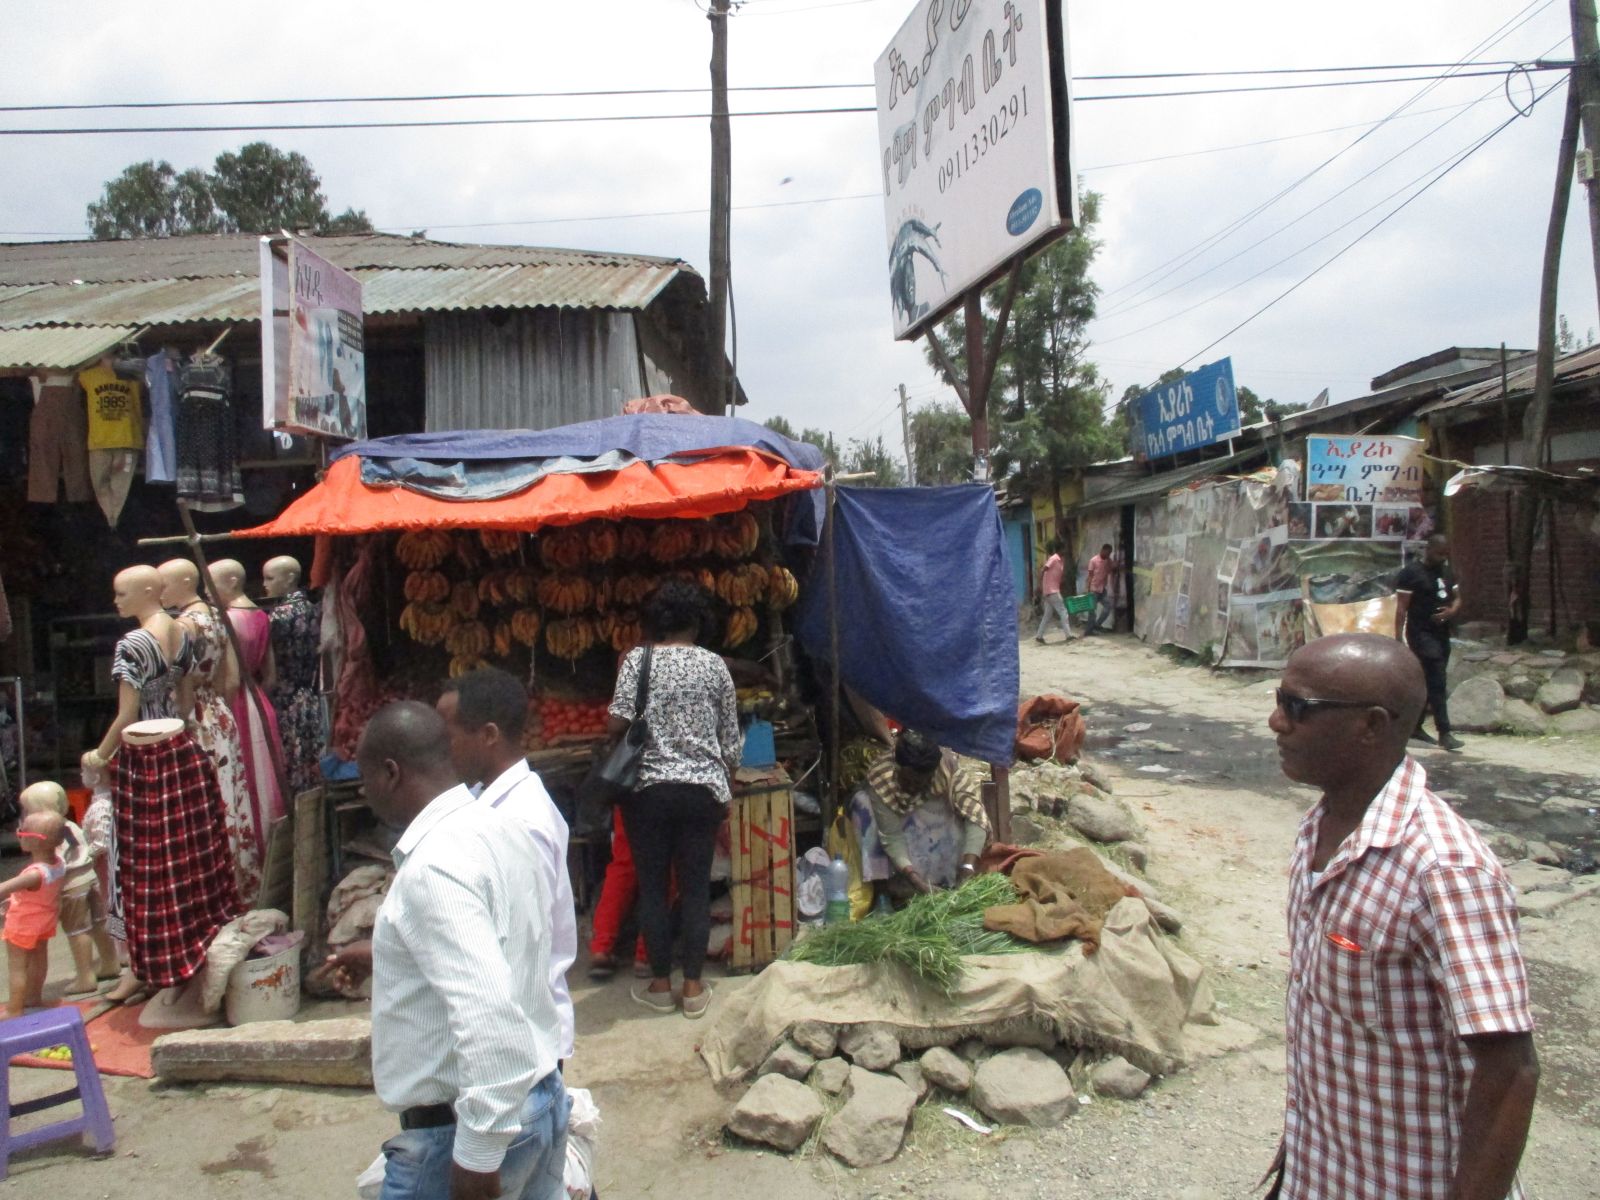 Informeller Händler in Addis Abeba: Um die Akzeptanz von Steuern zu erhöhen, müssen Regierungen eine gute Infrastruktur und soziale Dienstleistungen bieten.